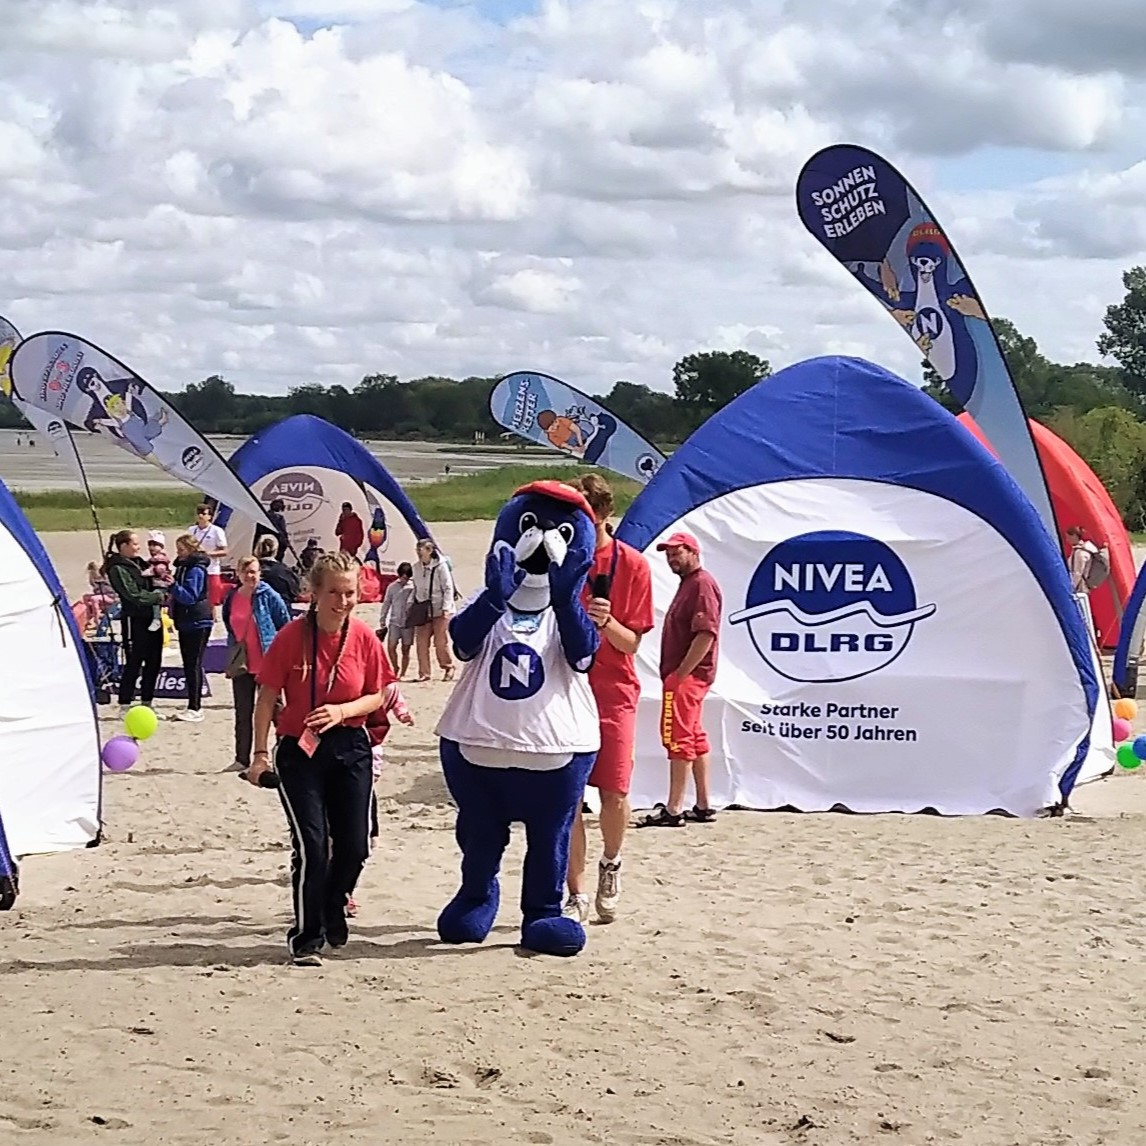 Zelte von DLRG und Nivea und das Nivea-Maskottchen, ein blauer Seebär aus Plüsch, am Strand